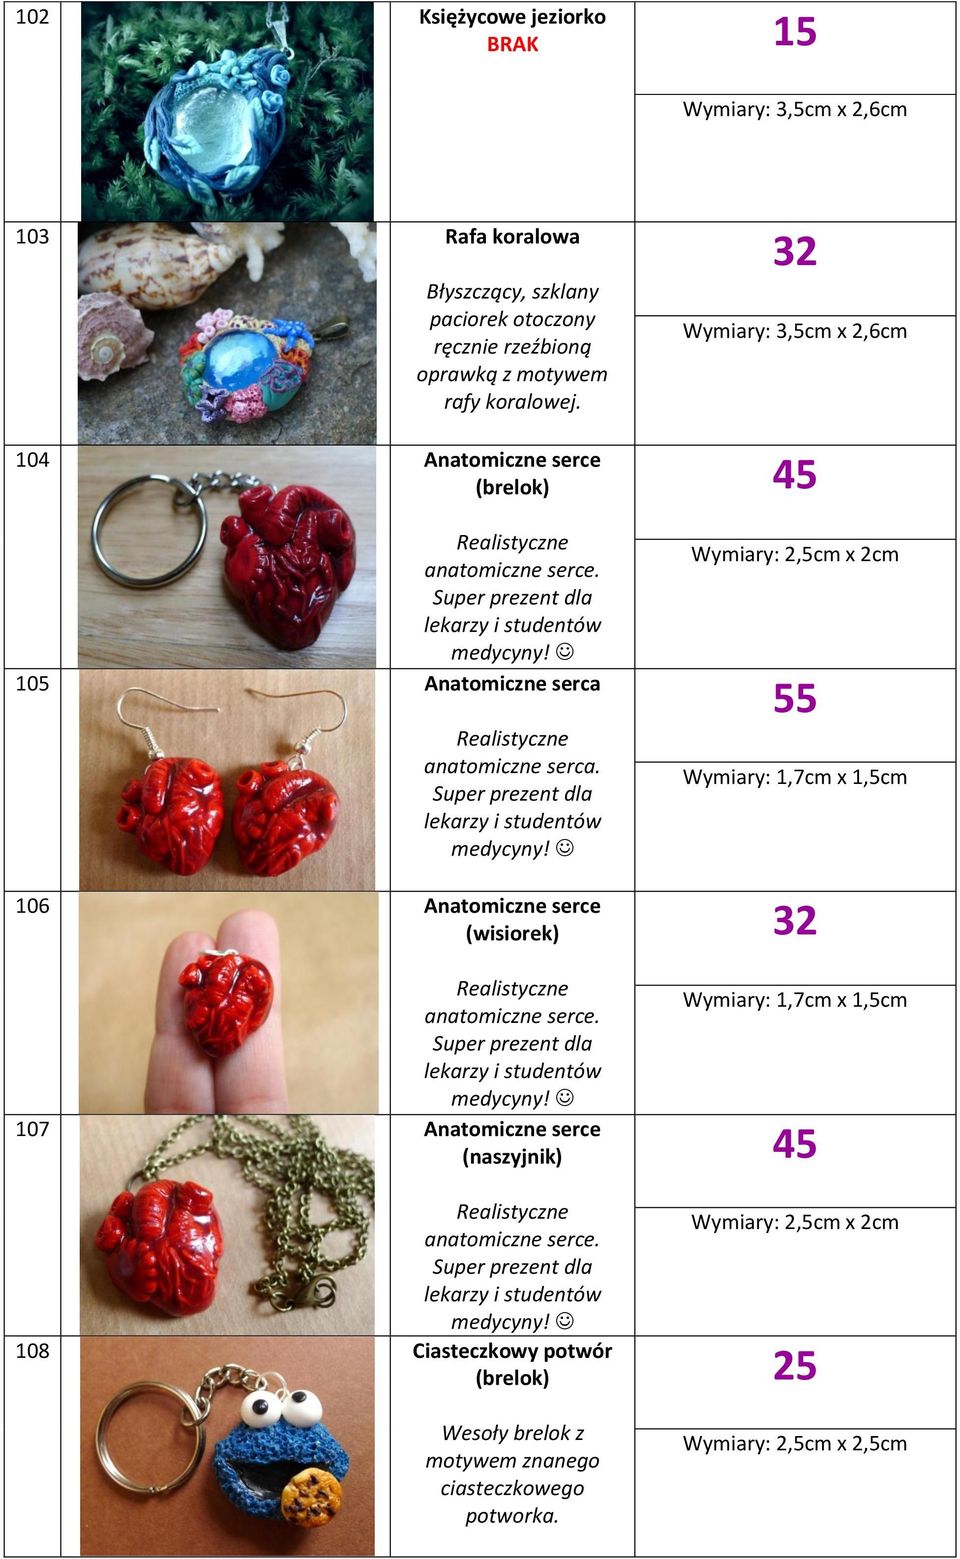 Super prezent dla lekarzy i studentów medycyny! 106 Anatomiczne serce (wisiorek) Realistyczne anatomiczne serce. Super prezent dla lekarzy i studentów medycyny!